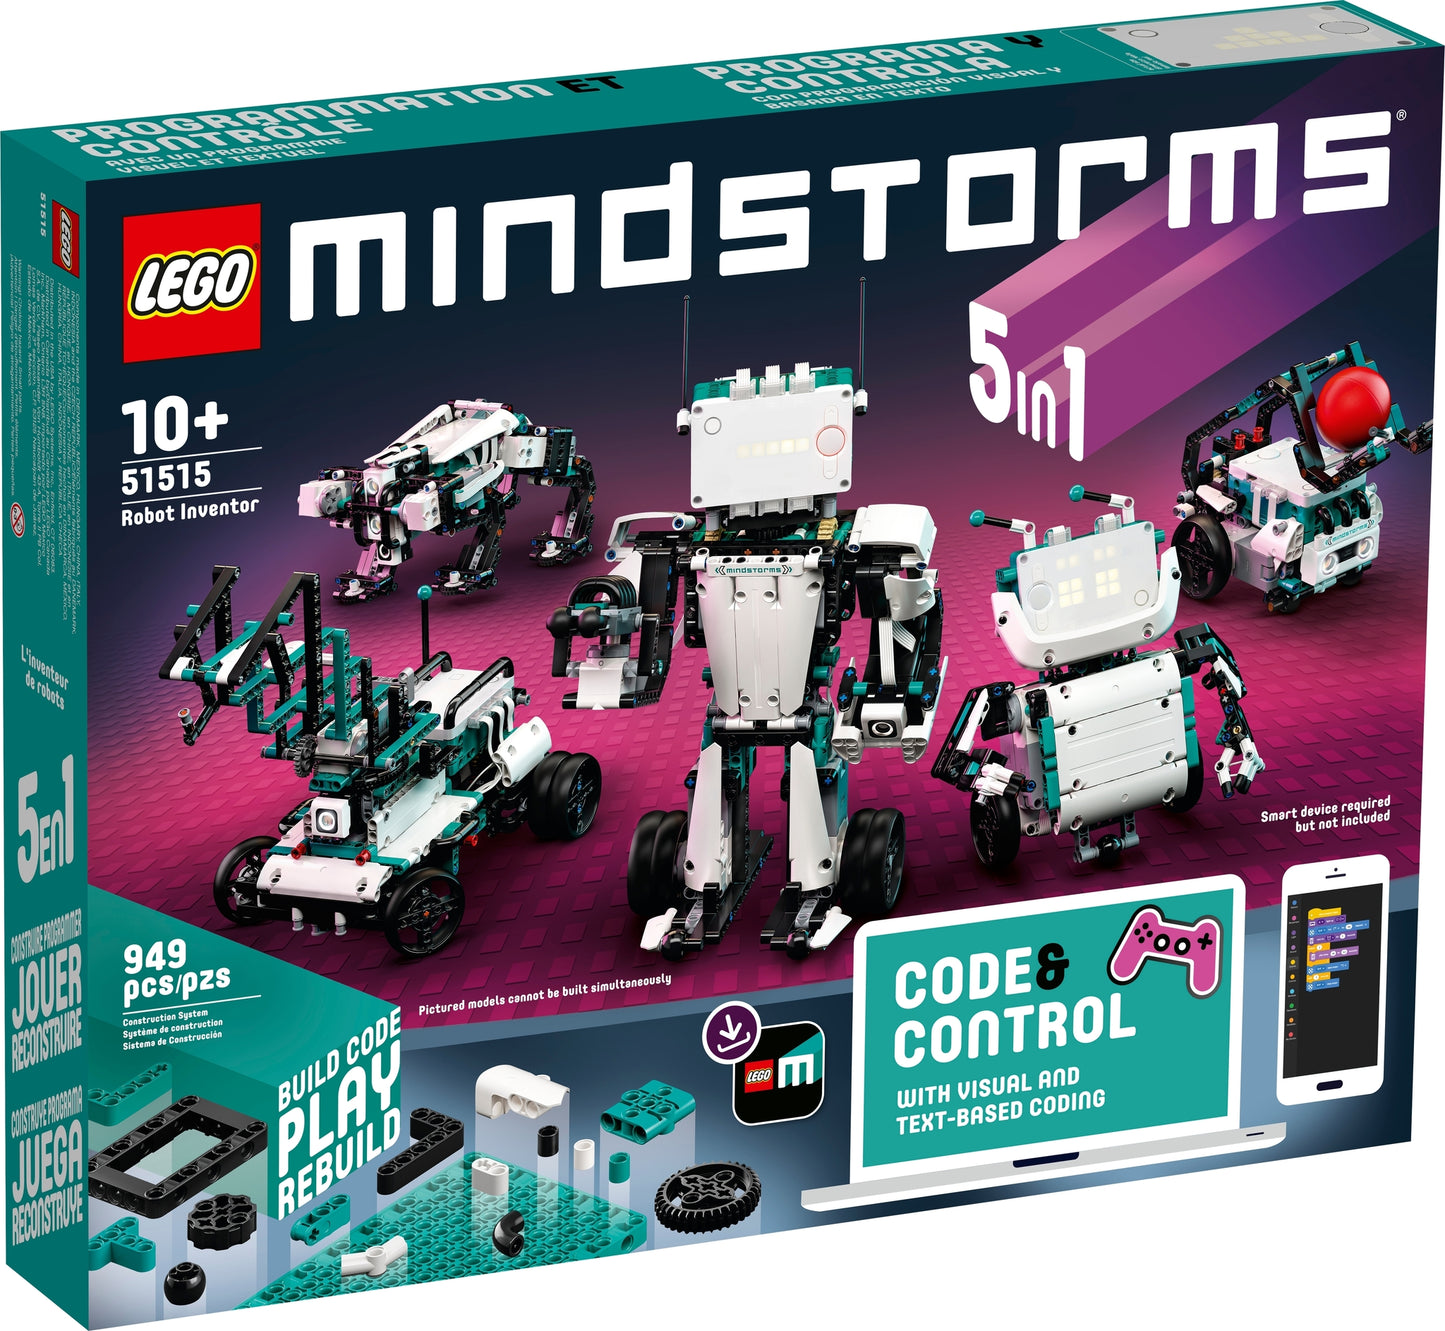 51515 LEGO Mindstorms - Robot Inventor